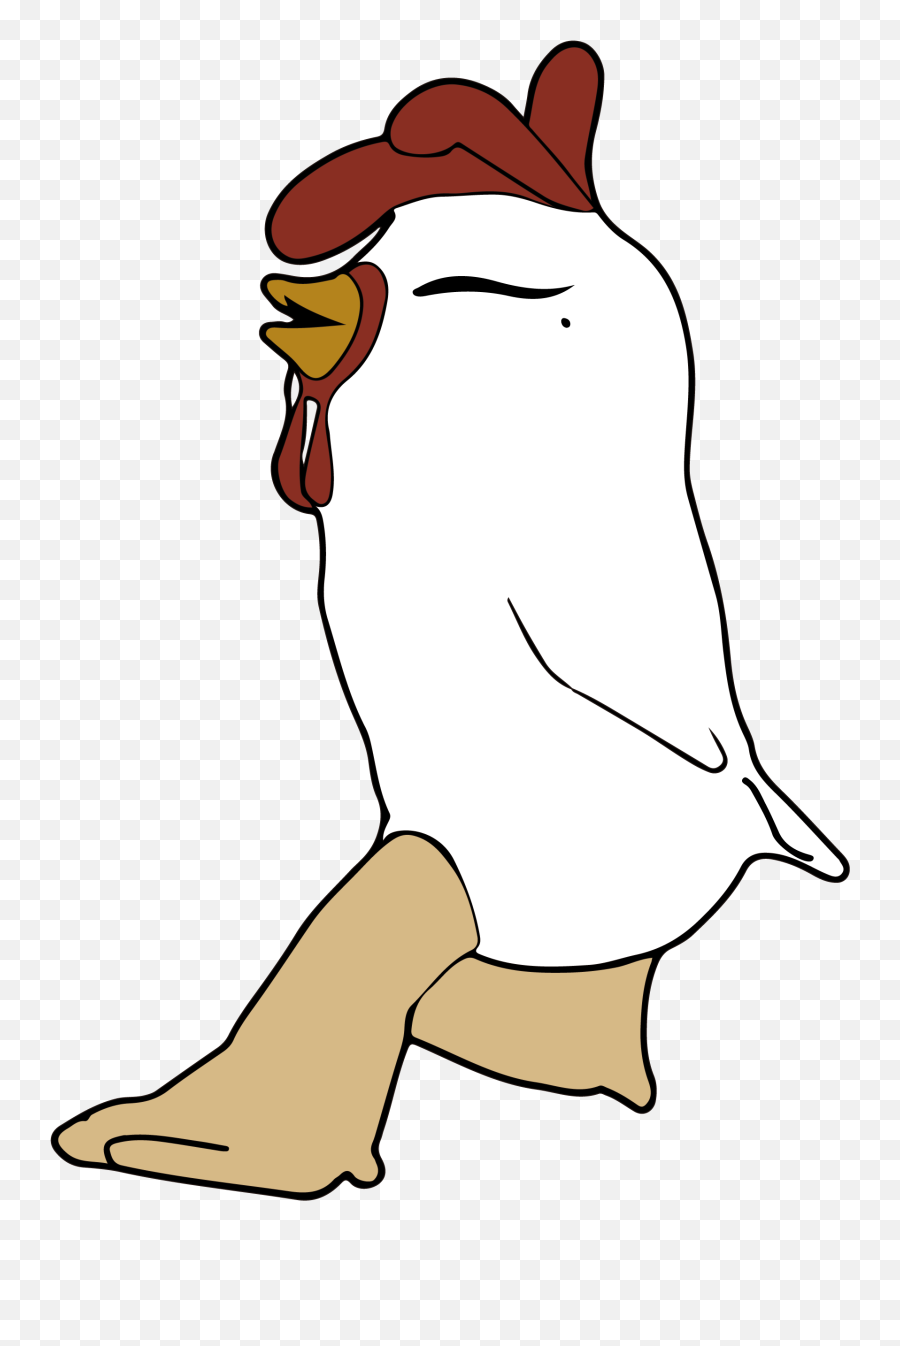 Chickens Emoticon - Chicken Emoji,Chicken Emoticon